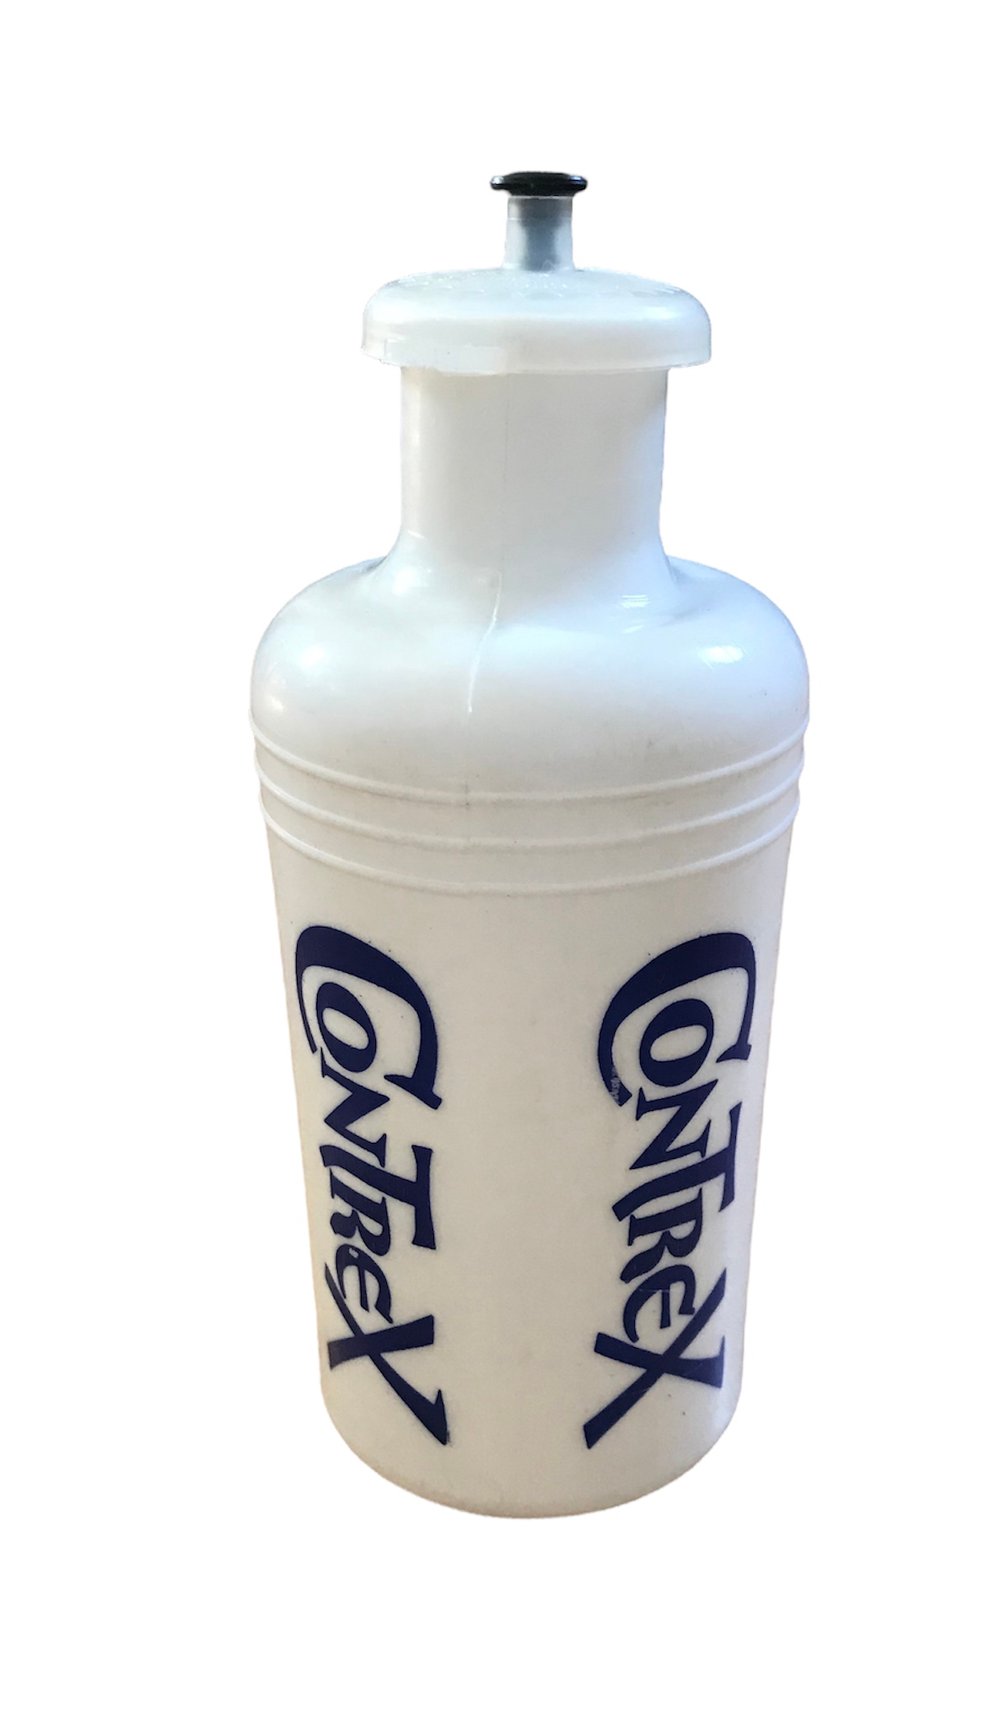 1981-84 - Tour de France / Contrex water bottle